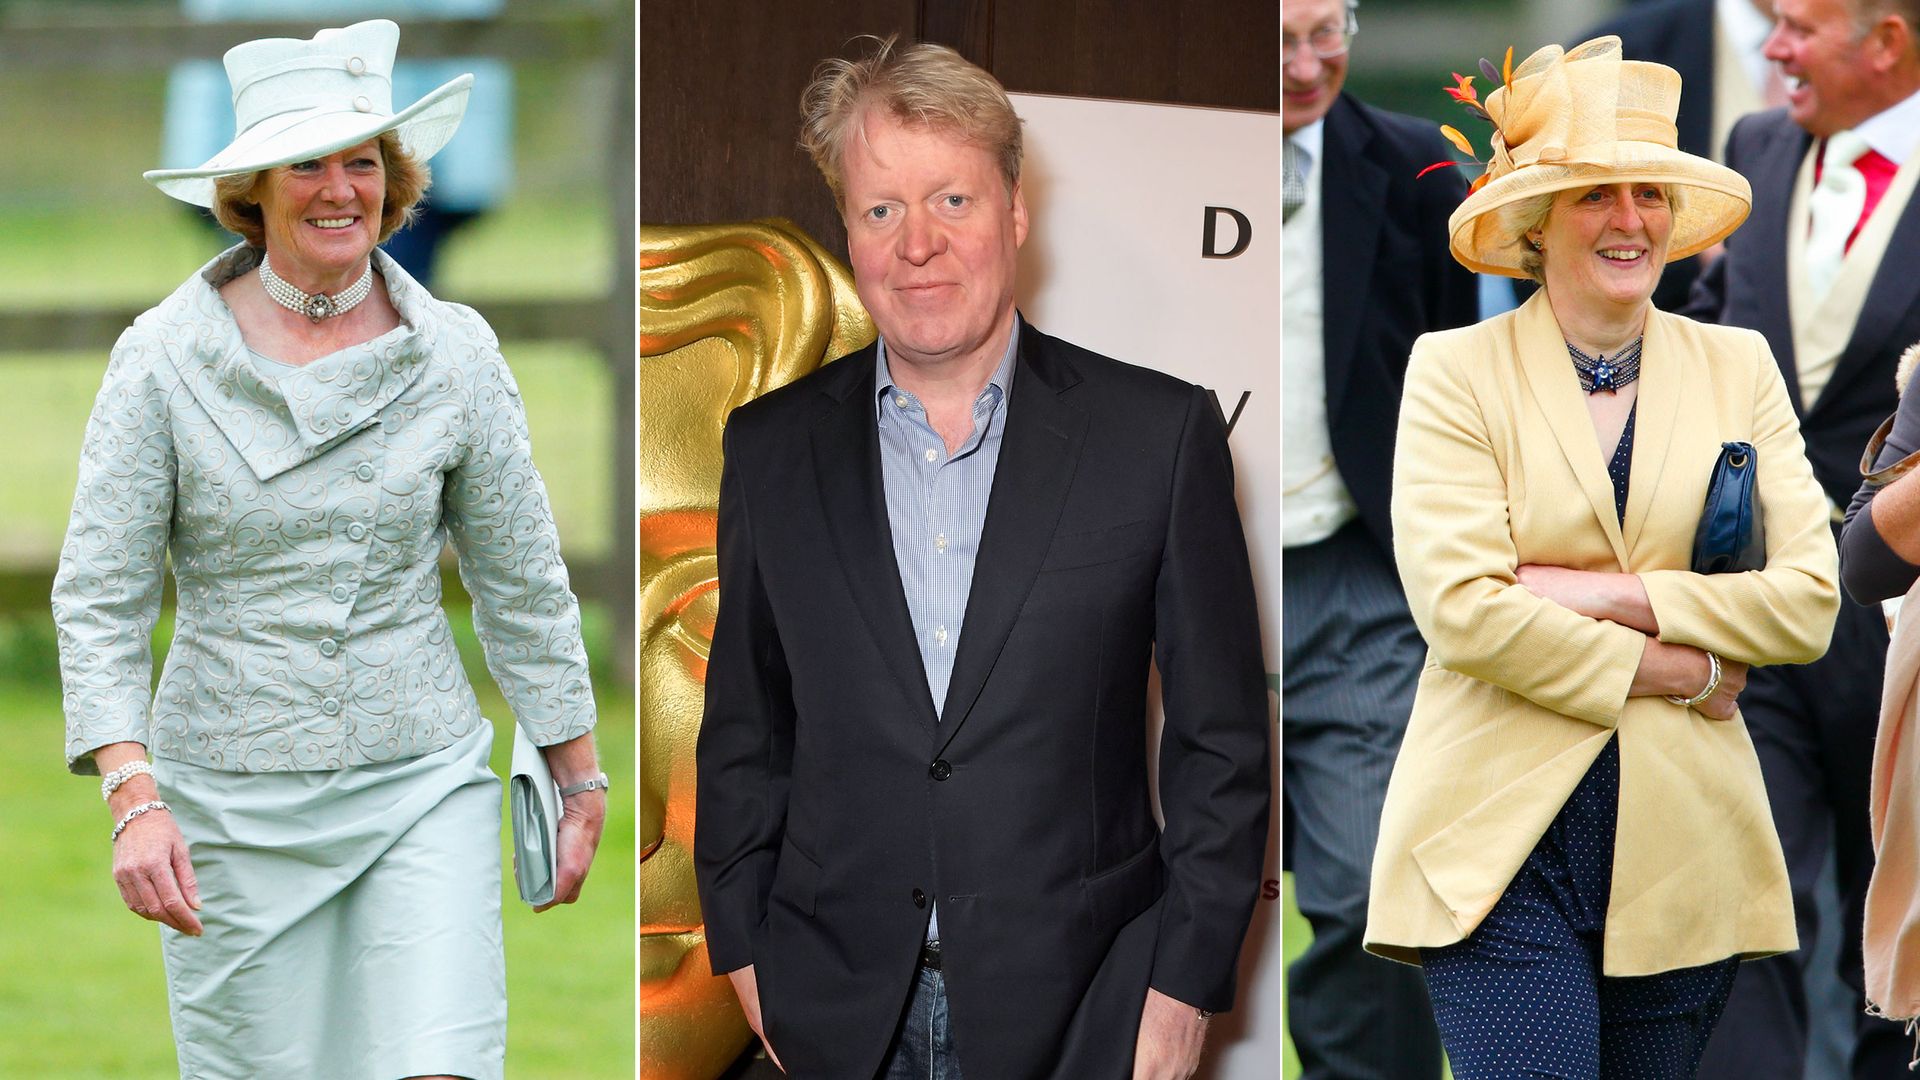 Princess Diana's siblings - Sarah McCorquodale, Charles Spencer, Jane Fellowes